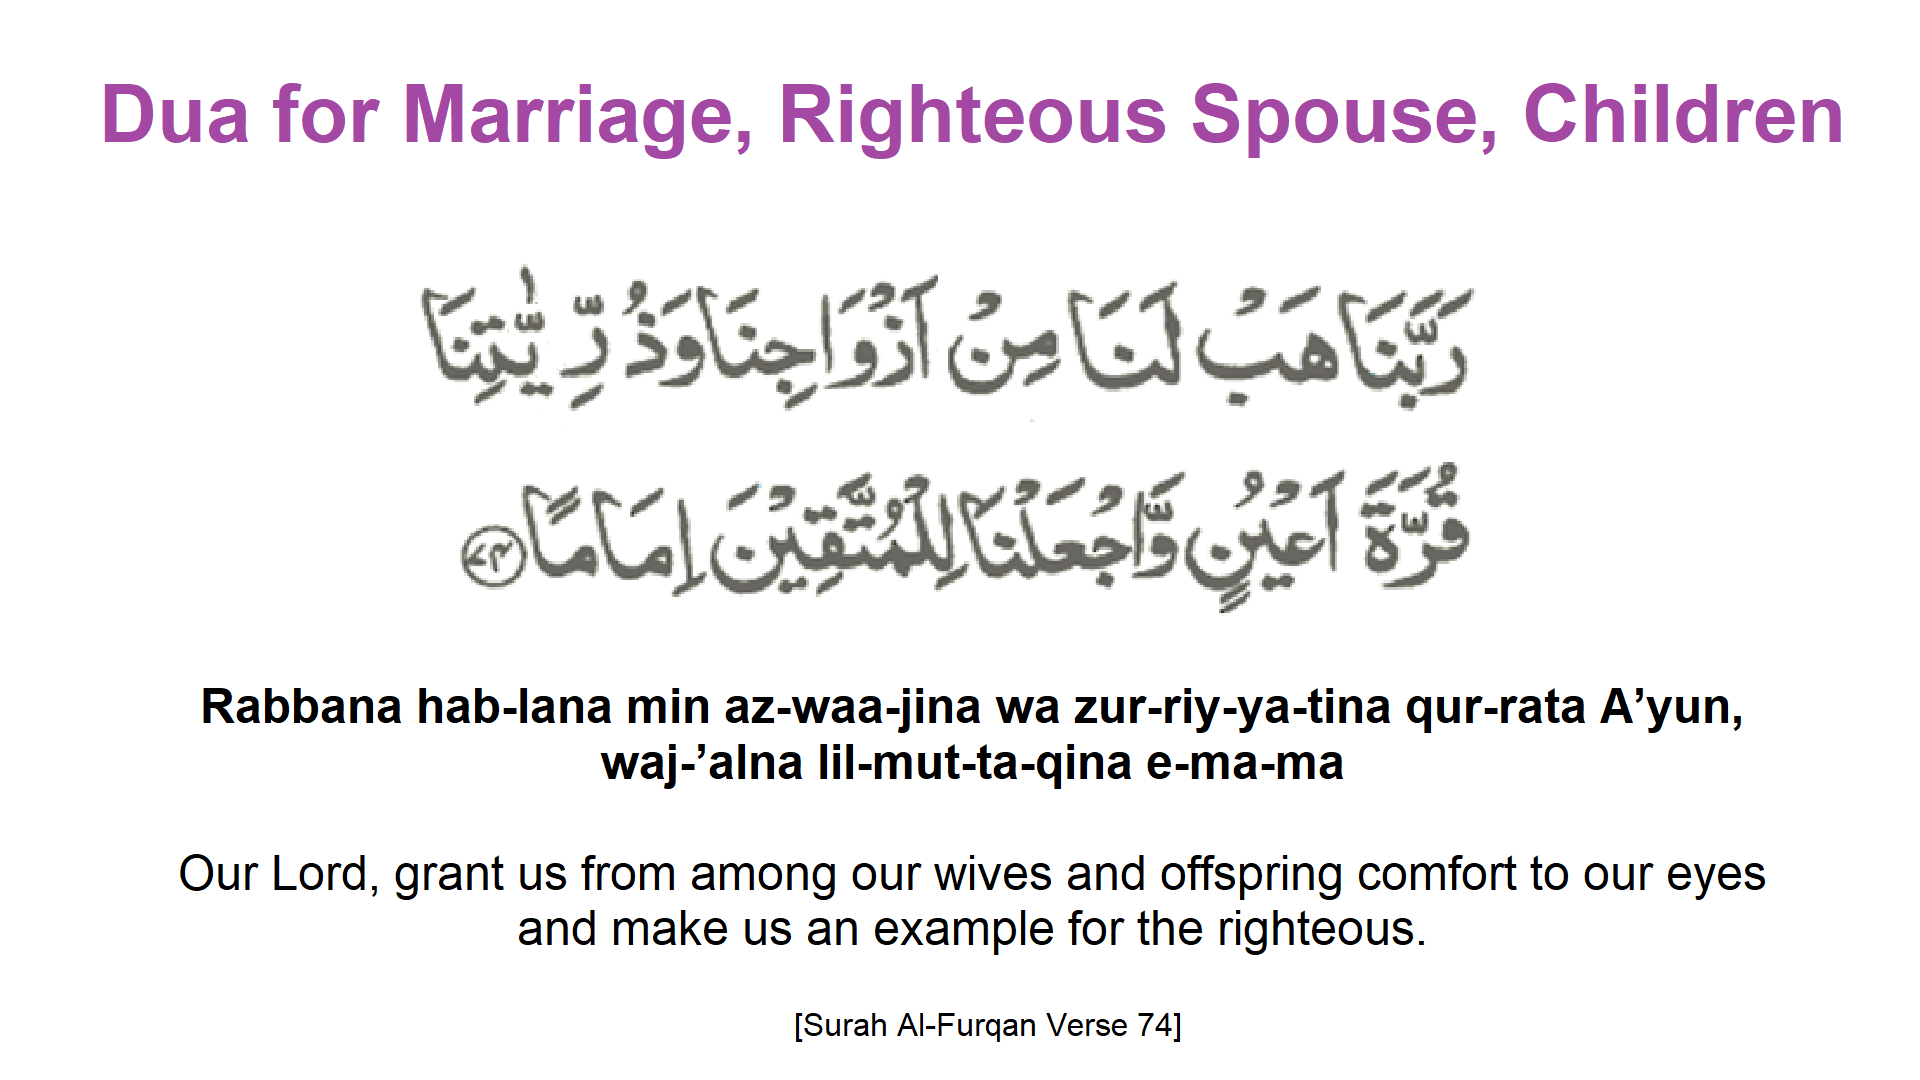 Dua for Marriage Righteous Spouse Childr 1 - Dua for Marriage, Righteous Spouse, Children